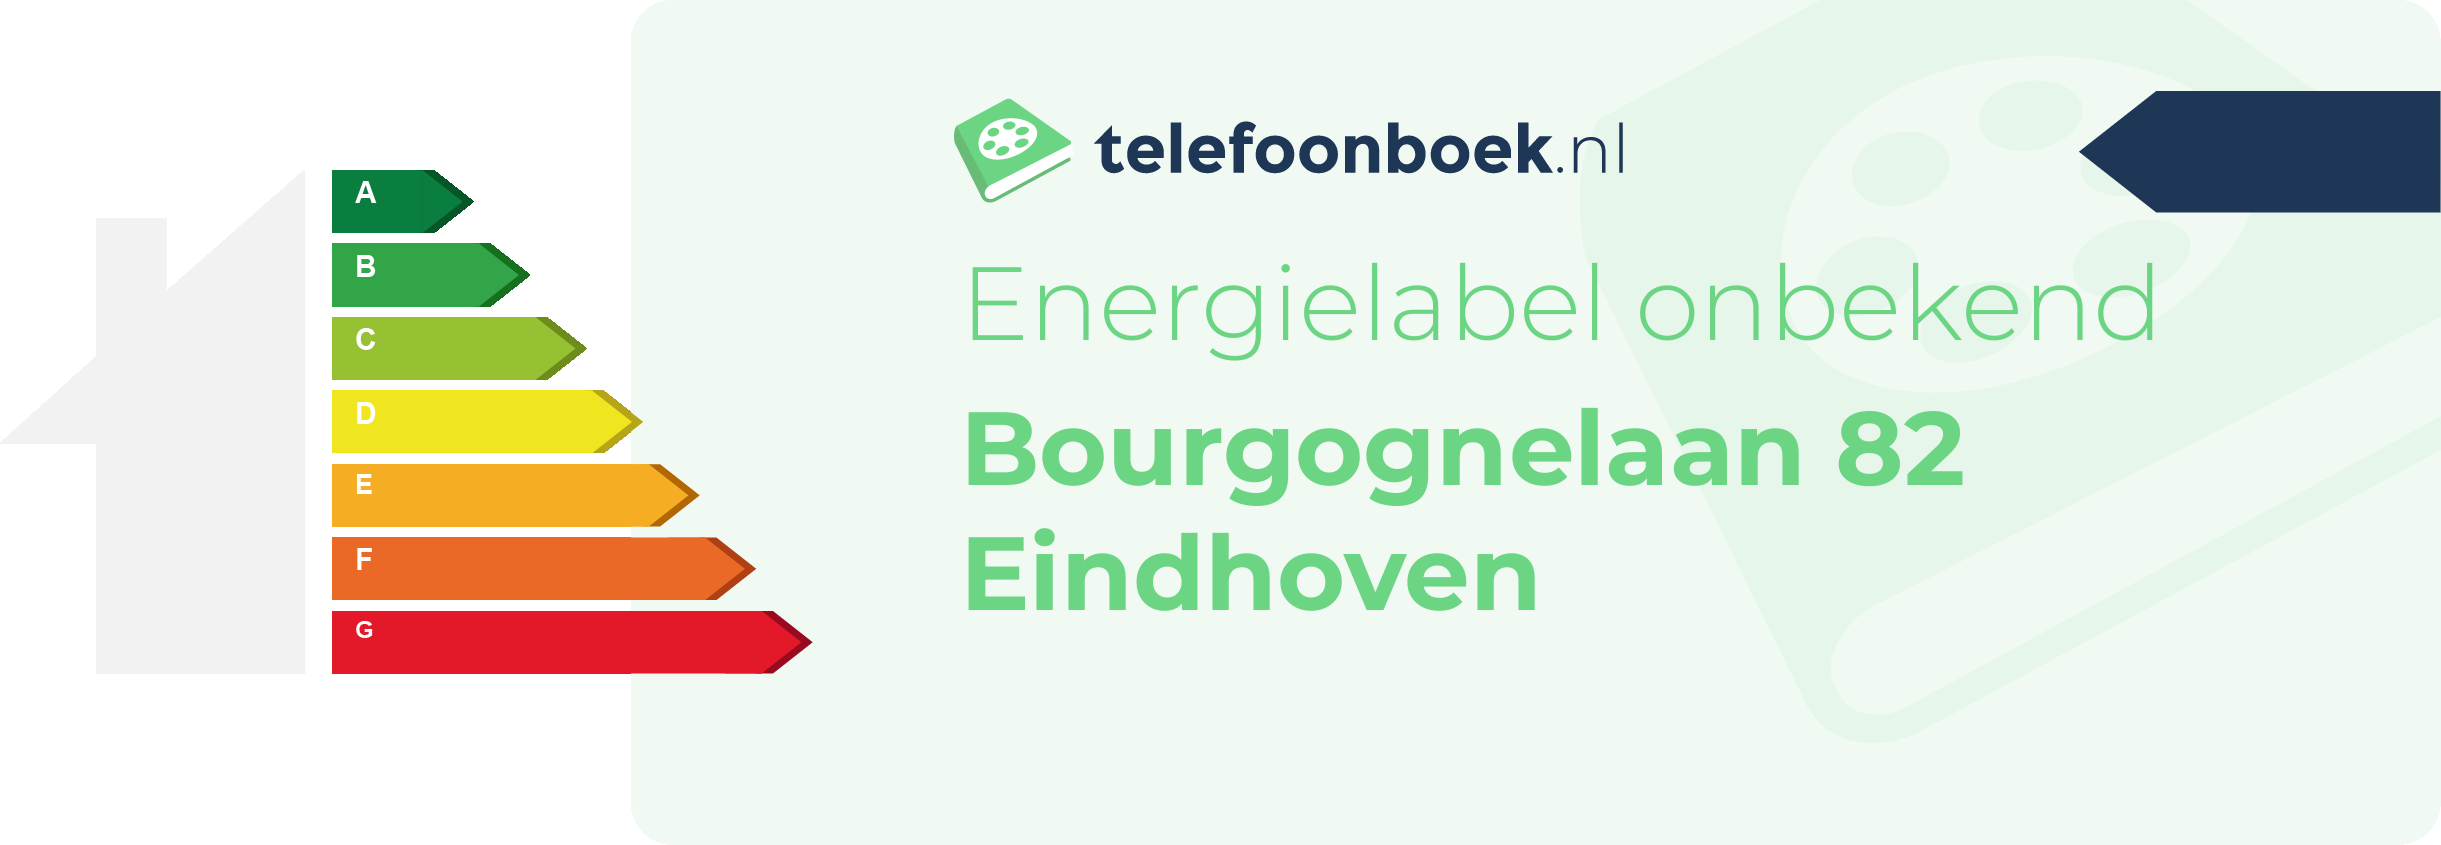 Energielabel Bourgognelaan 82 Eindhoven